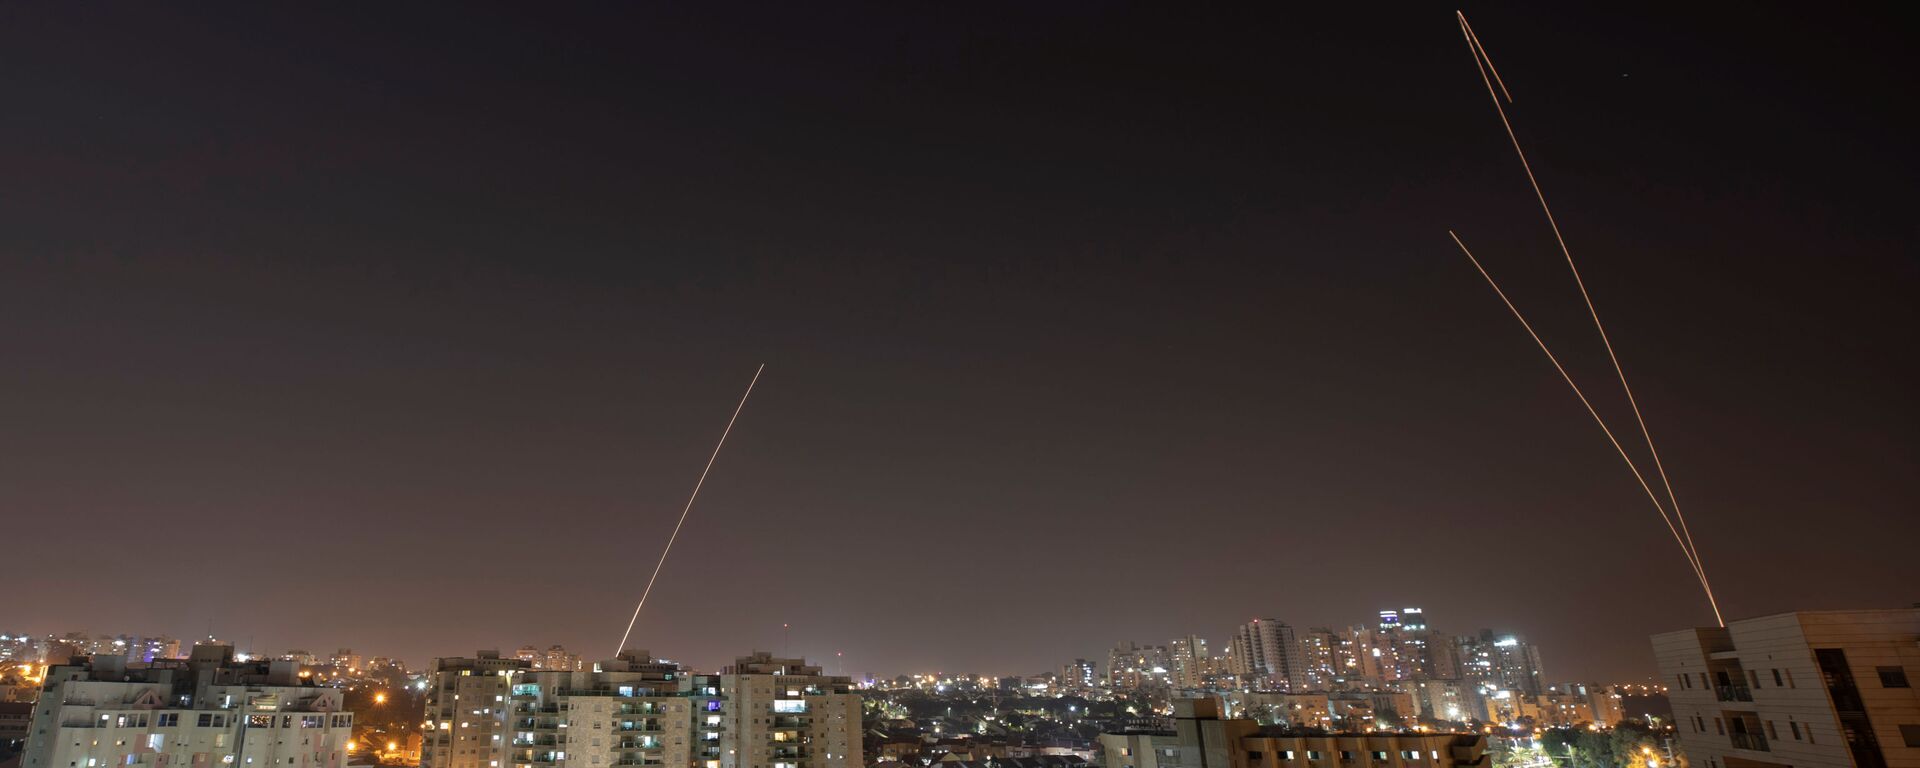 القبة الحديدية تطلق صواريخ اعتراضية أثناء إطلاق الصواريخ من غزة باتجاه إسرائيل بمدينة عسقلان - سبوتنيك عربي, 1920, 10.05.2021